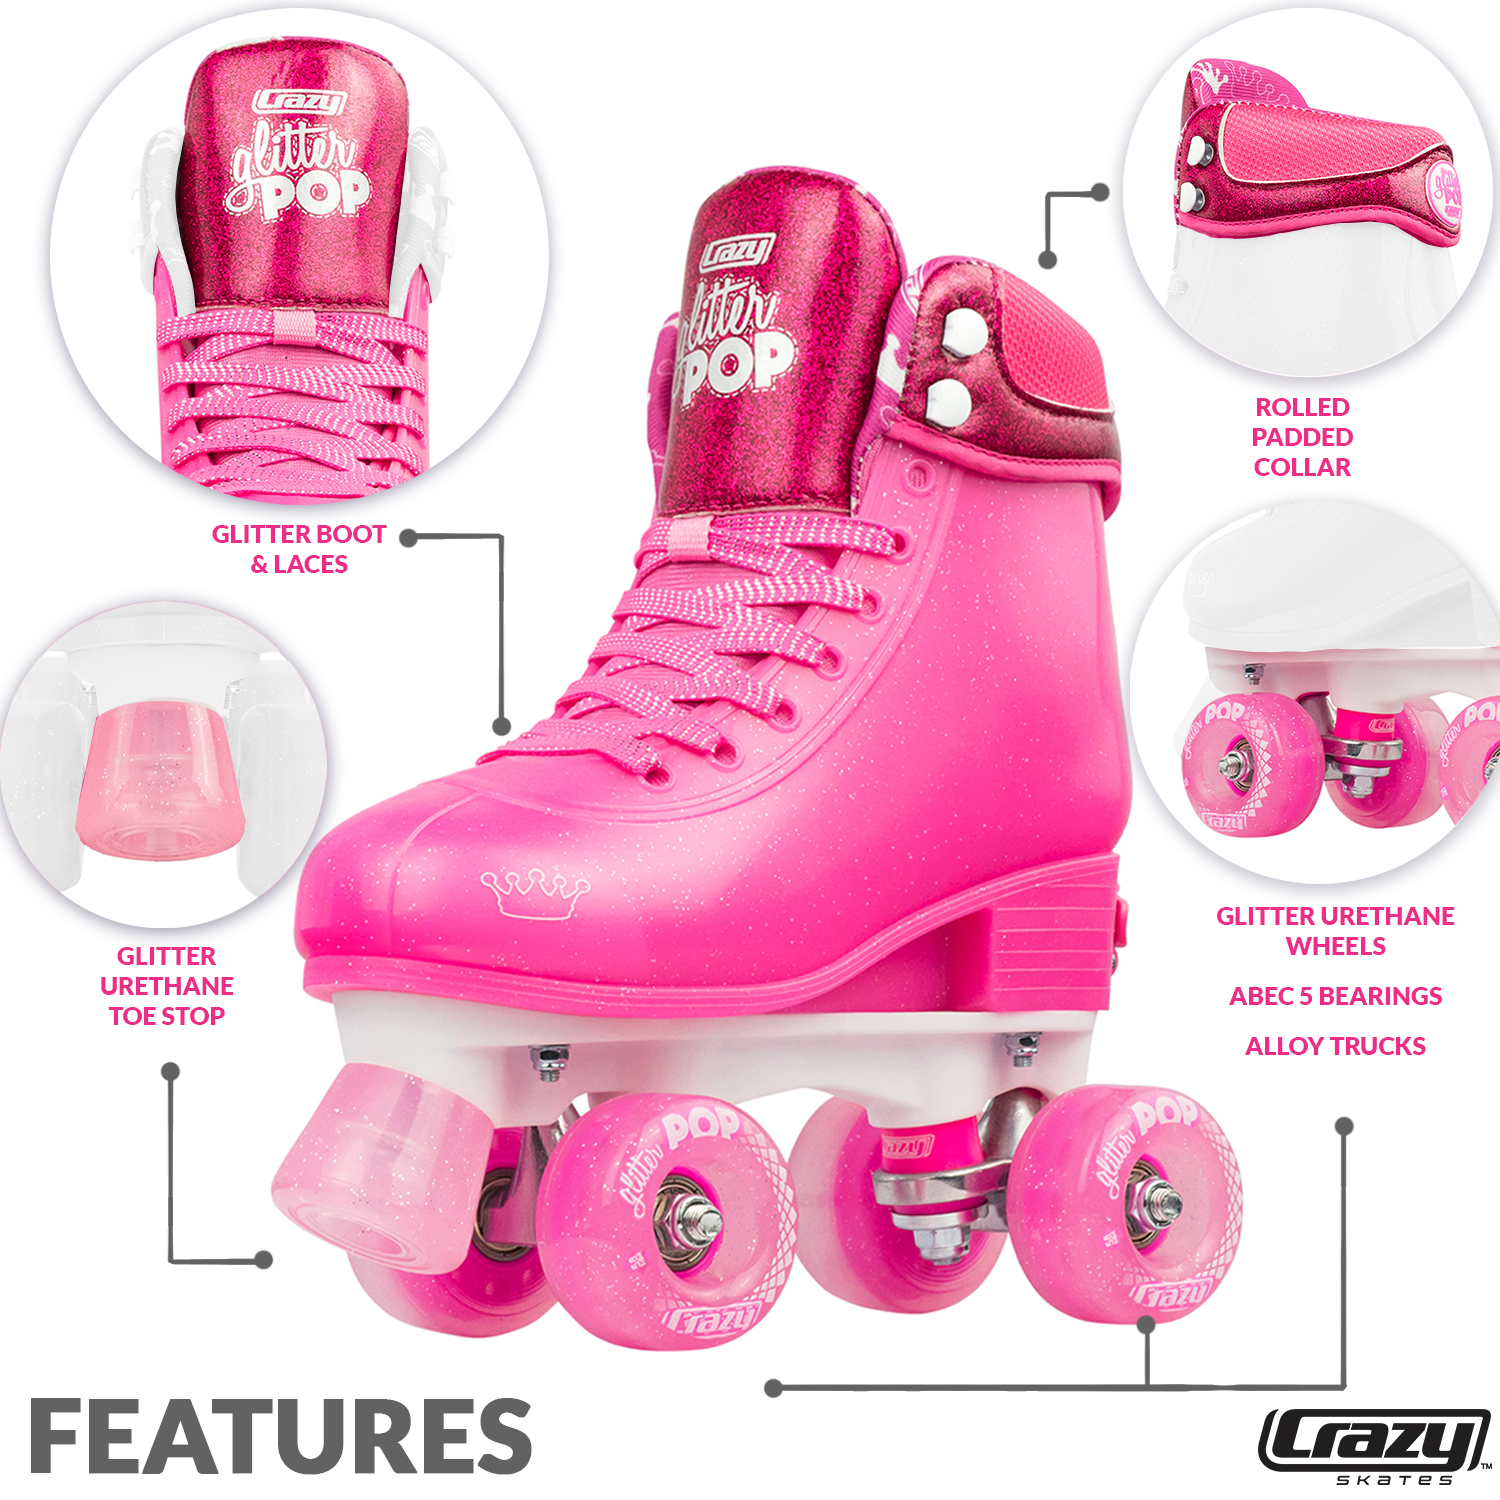 Roller Skates for Girls Boys Kids, Black Pink Purple 4 Sizes Adjustable  Kids Roller Skates with Light up Wheels and Shining Upper Design, Roller